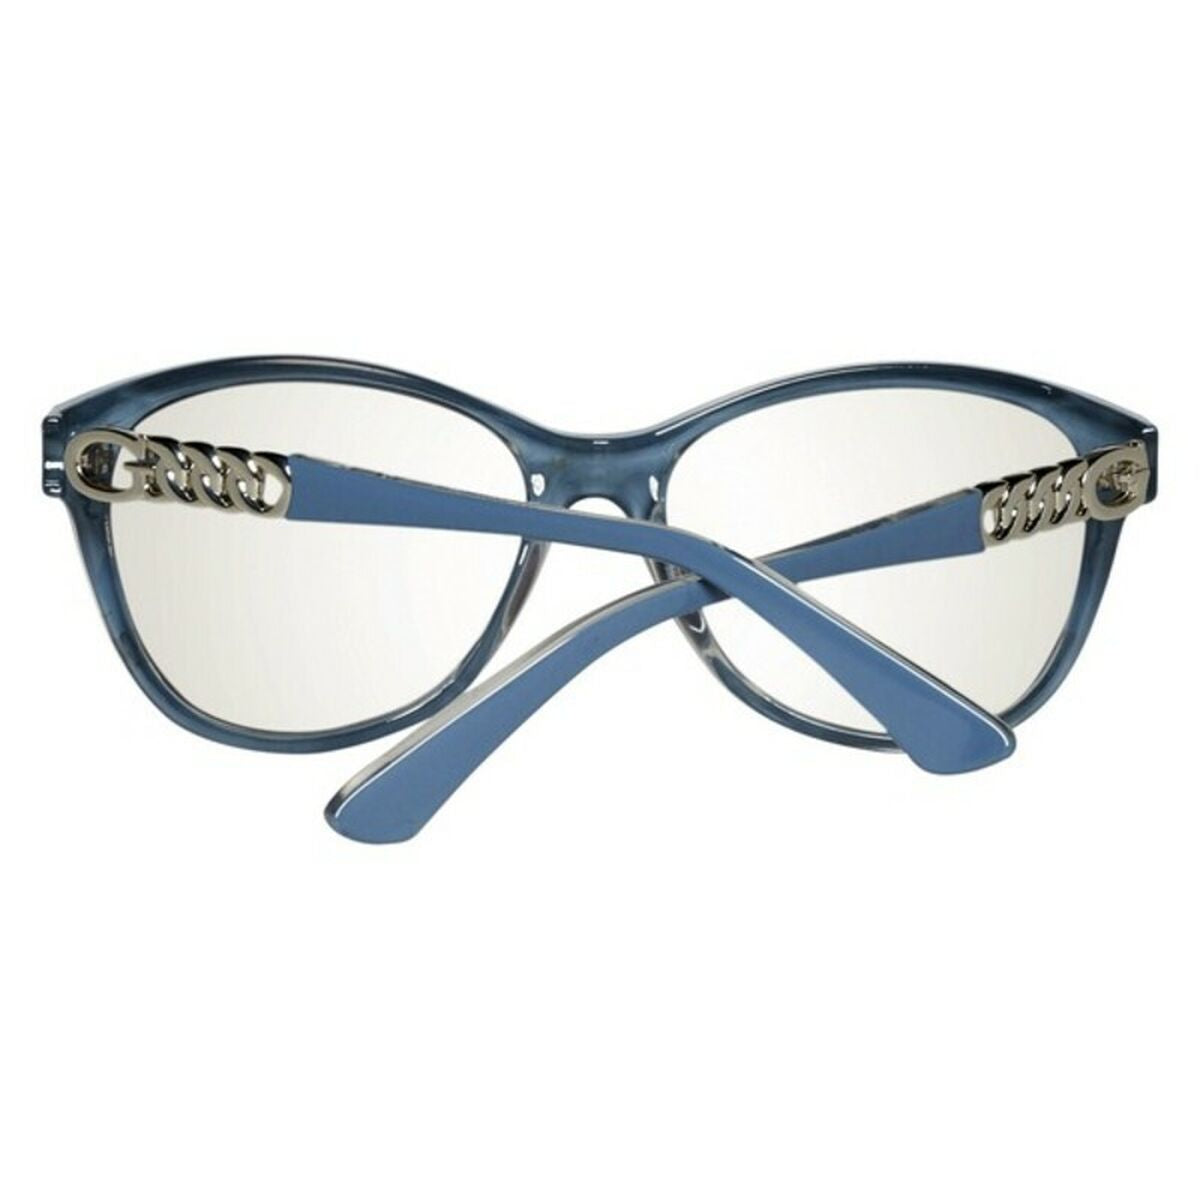 Kaufe Damensonnenbrille Guess GU7451-5890C (ø 58 mm) bei AWK Flagship um € 52.00